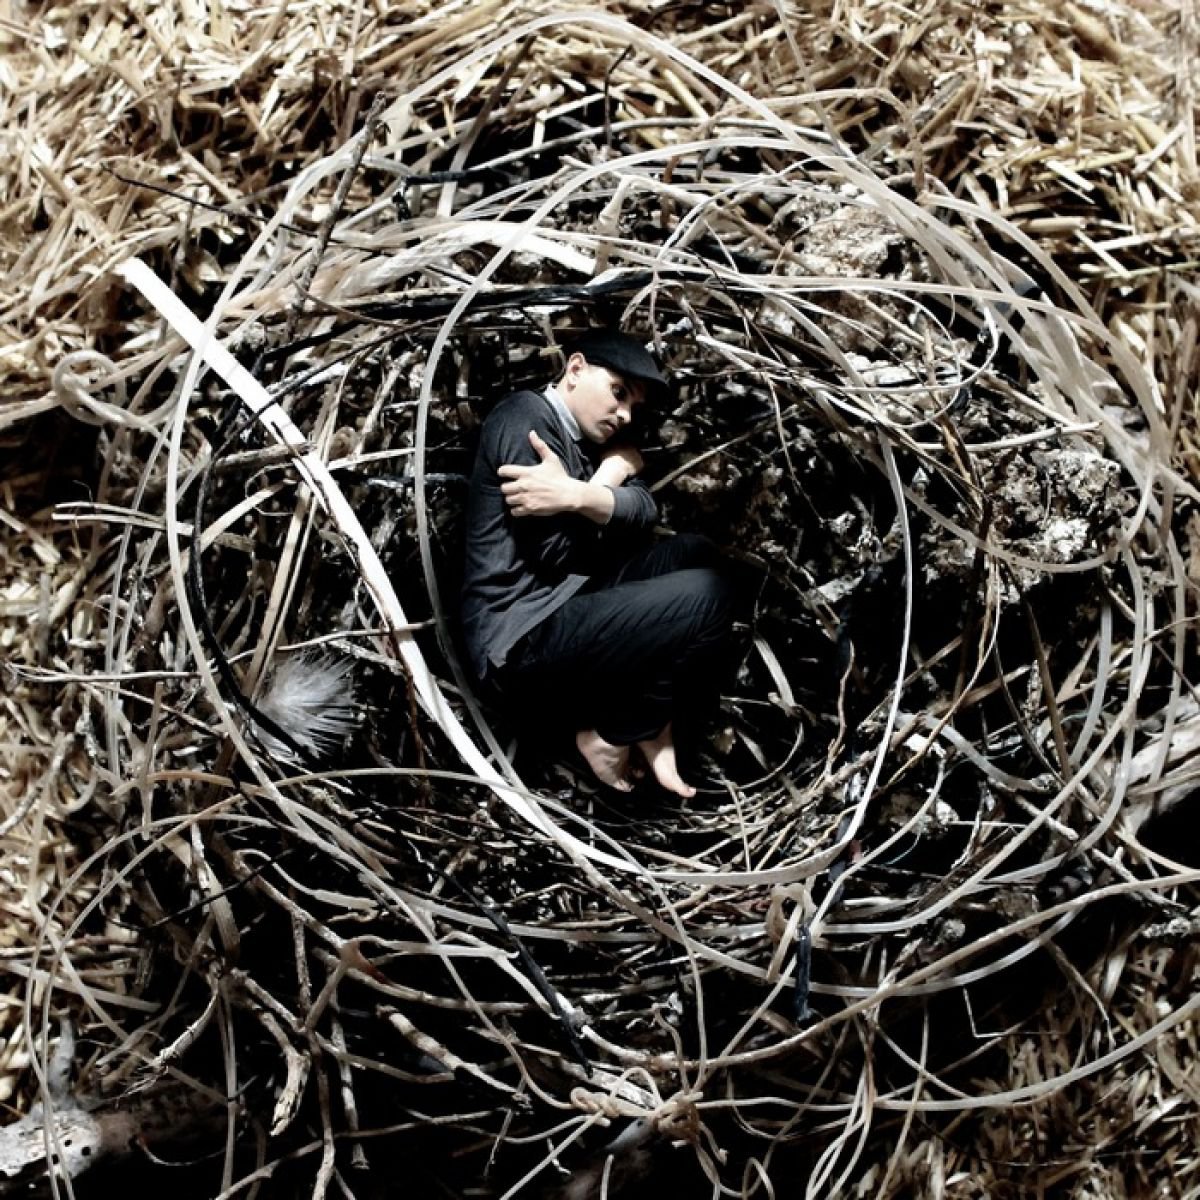 Into the Nest by Achraf Baznani